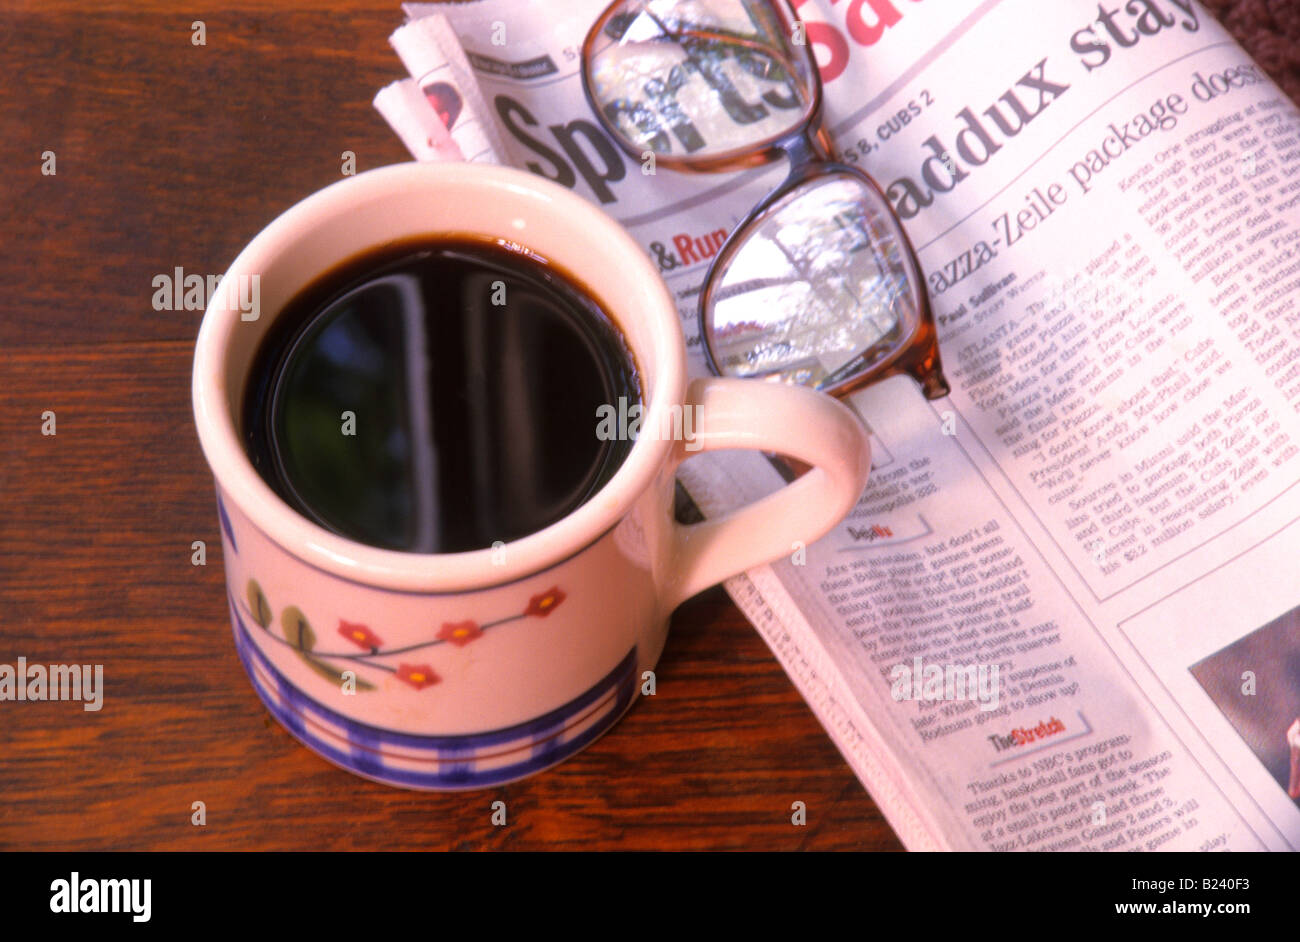 Tazza di caffè giornale sezione sport occhiali still life Foto Stock